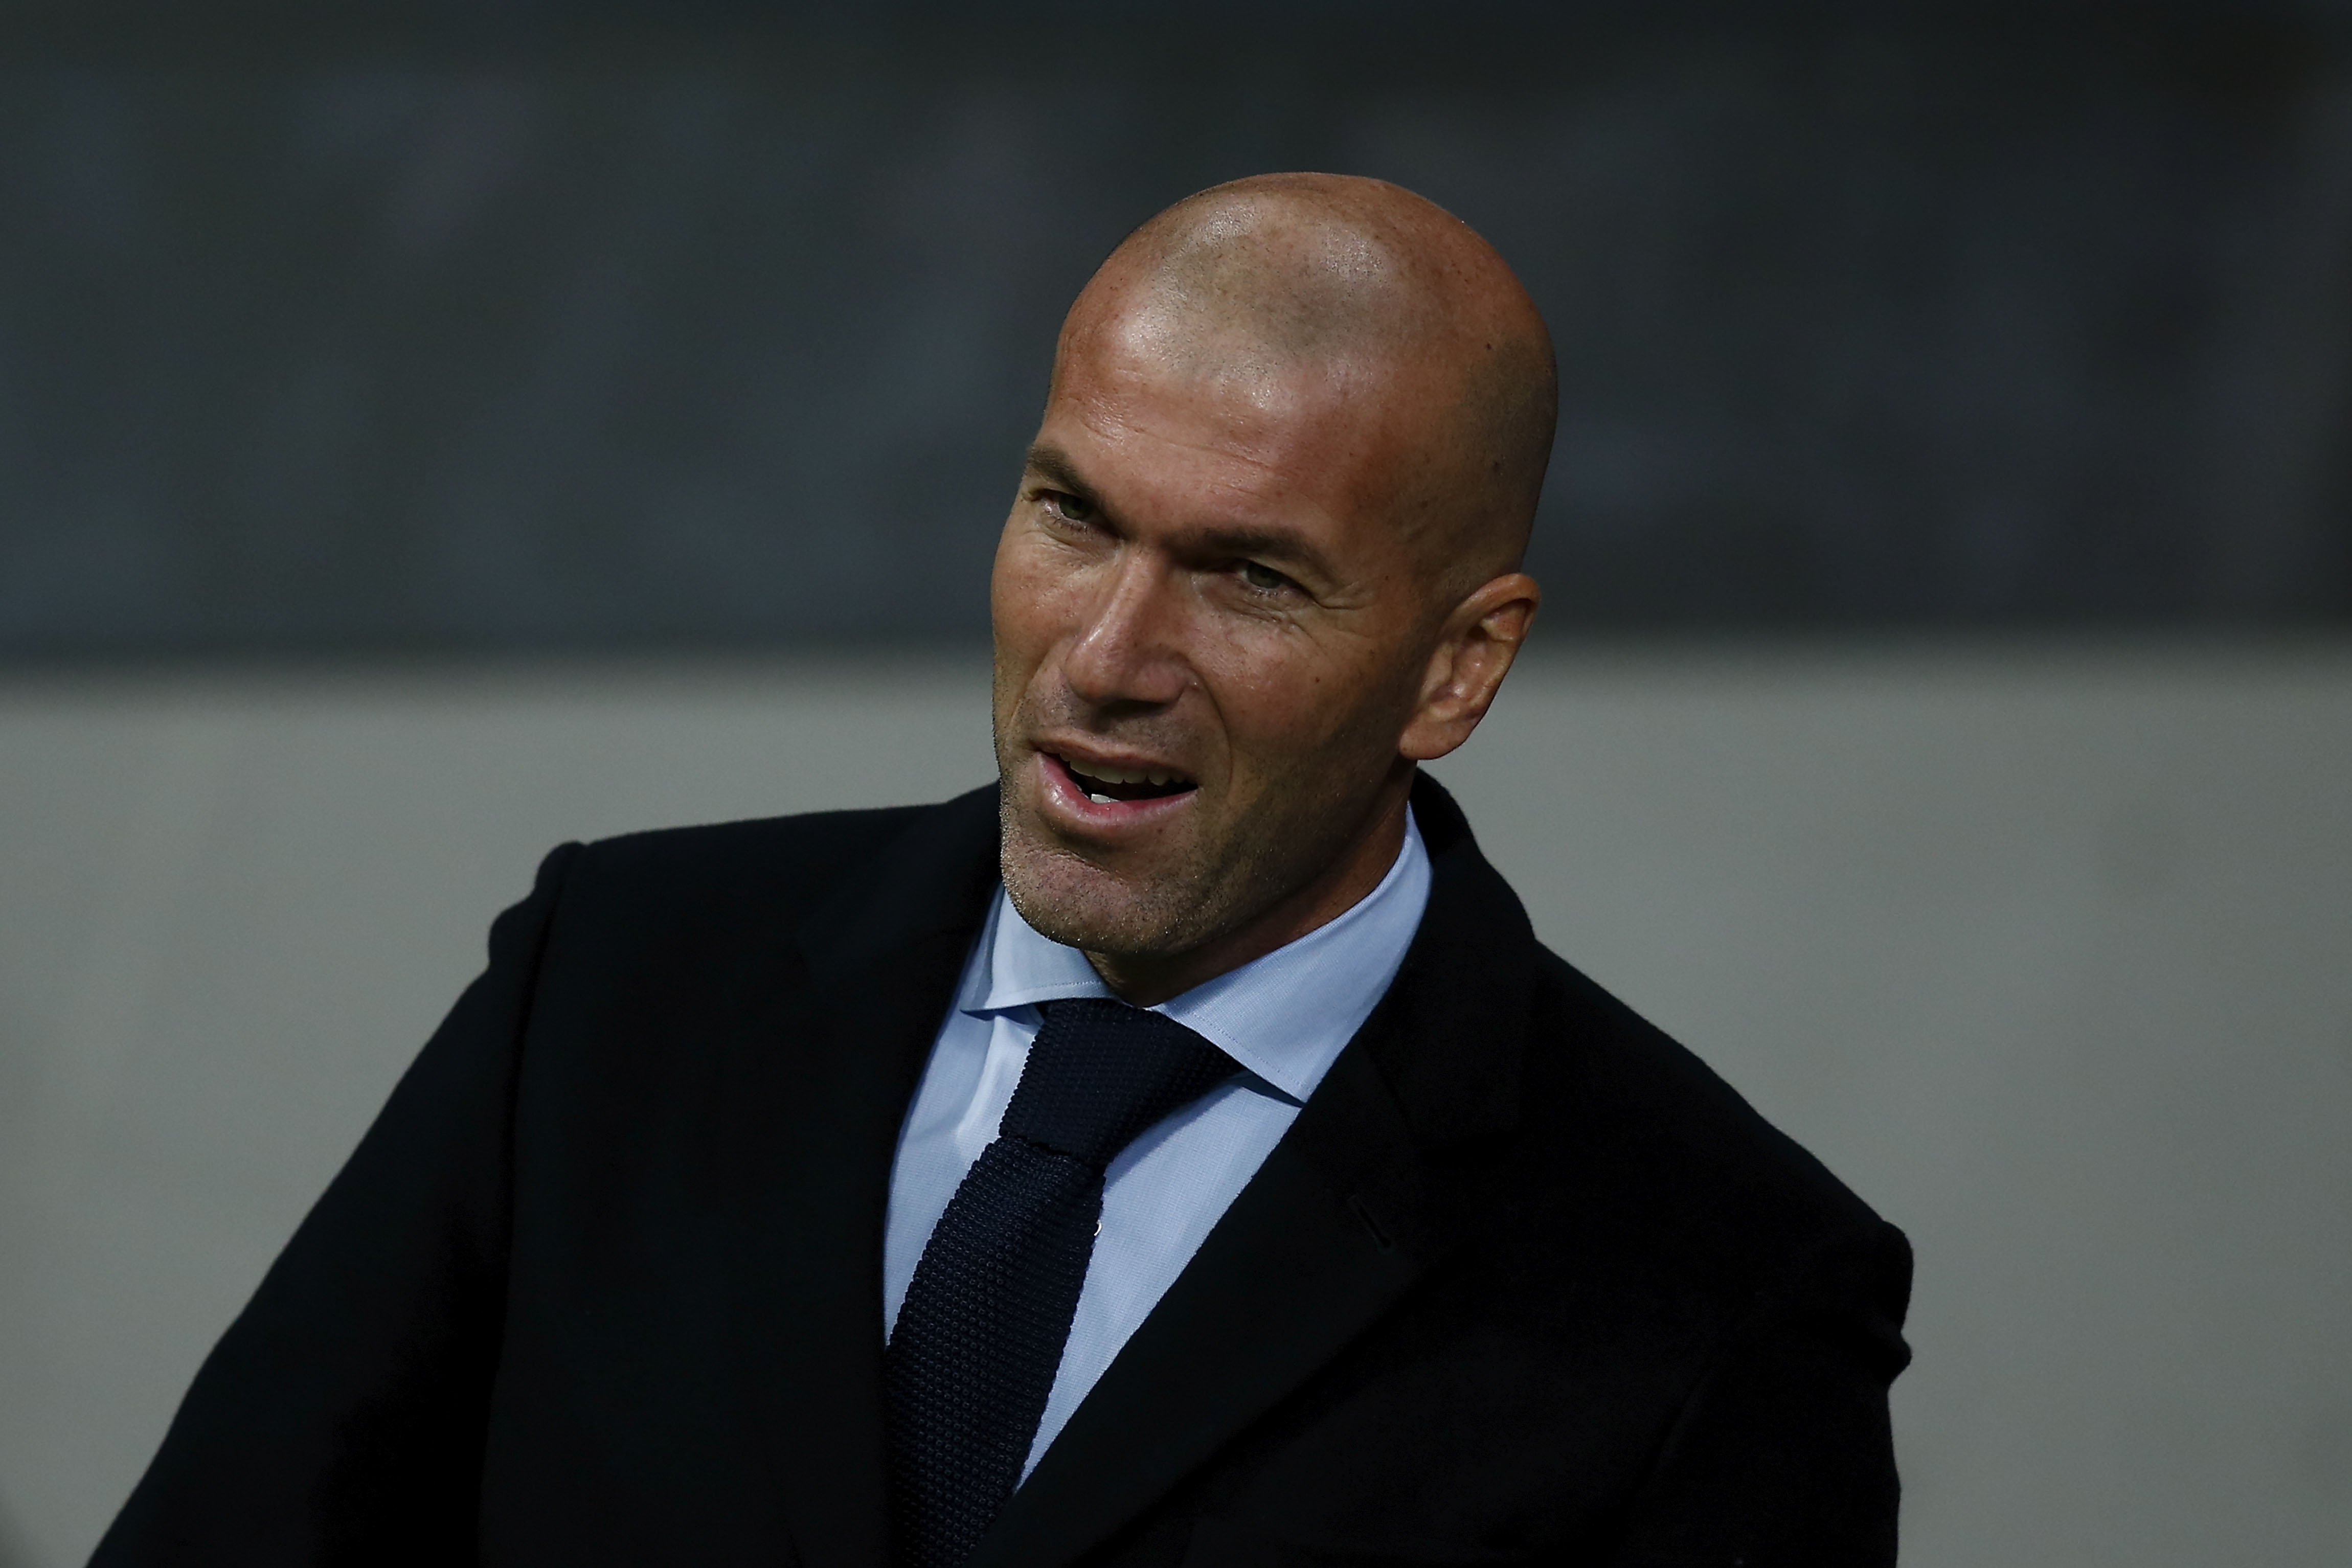 Треньорът на Реал Мадрид Зинедин Зидан демонстрира спокойствие независимо от